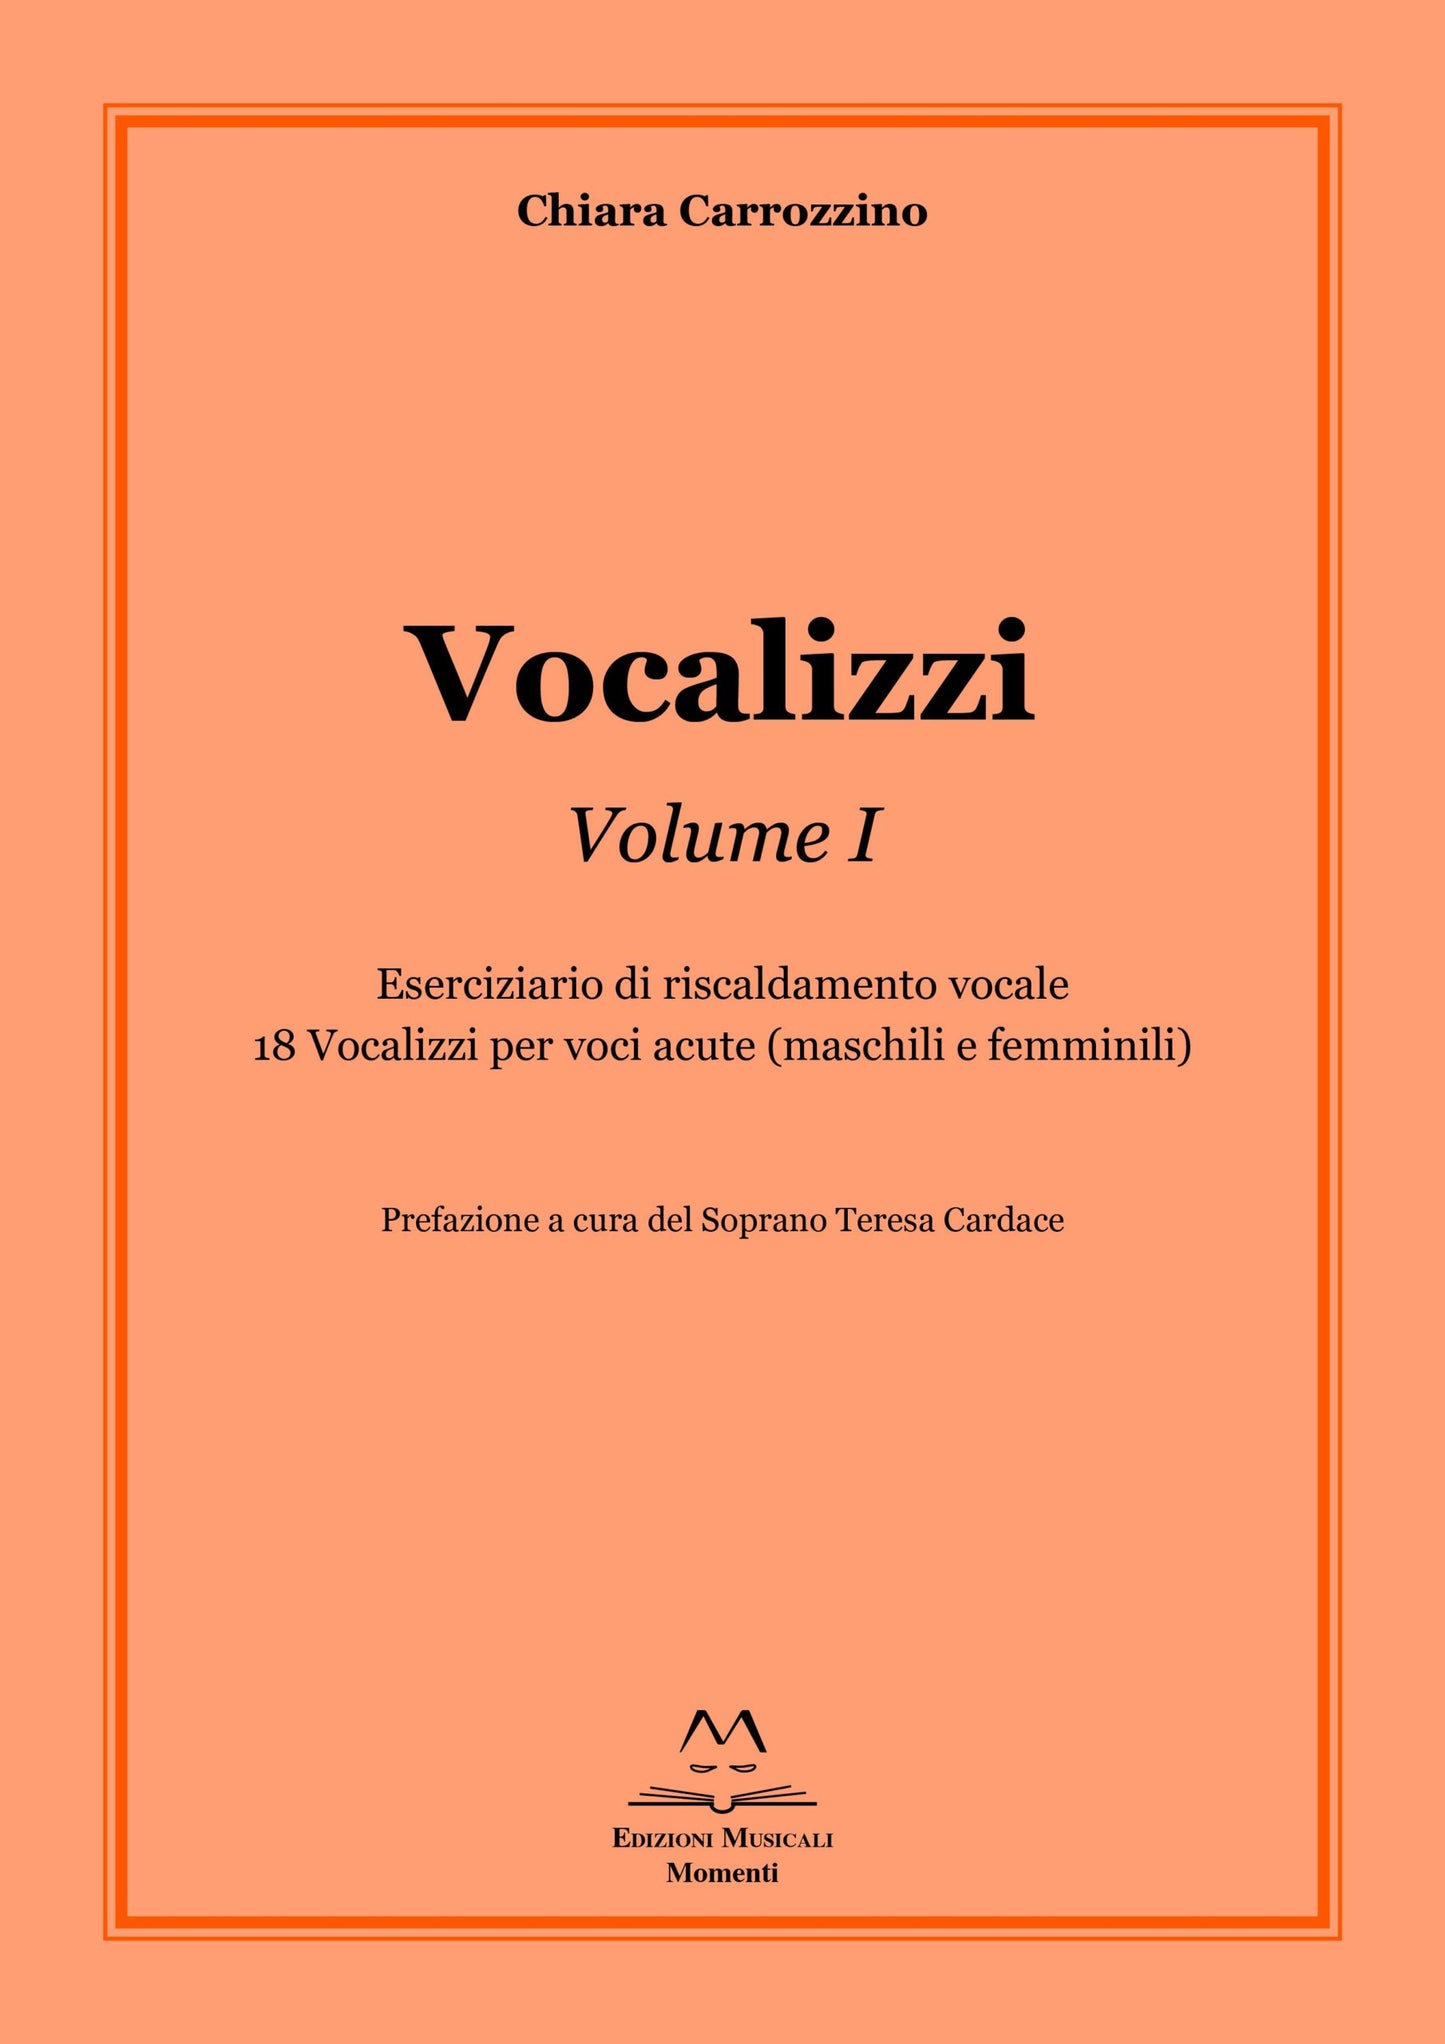 Vocalizzi Vol. I di Chiara Carrozzino